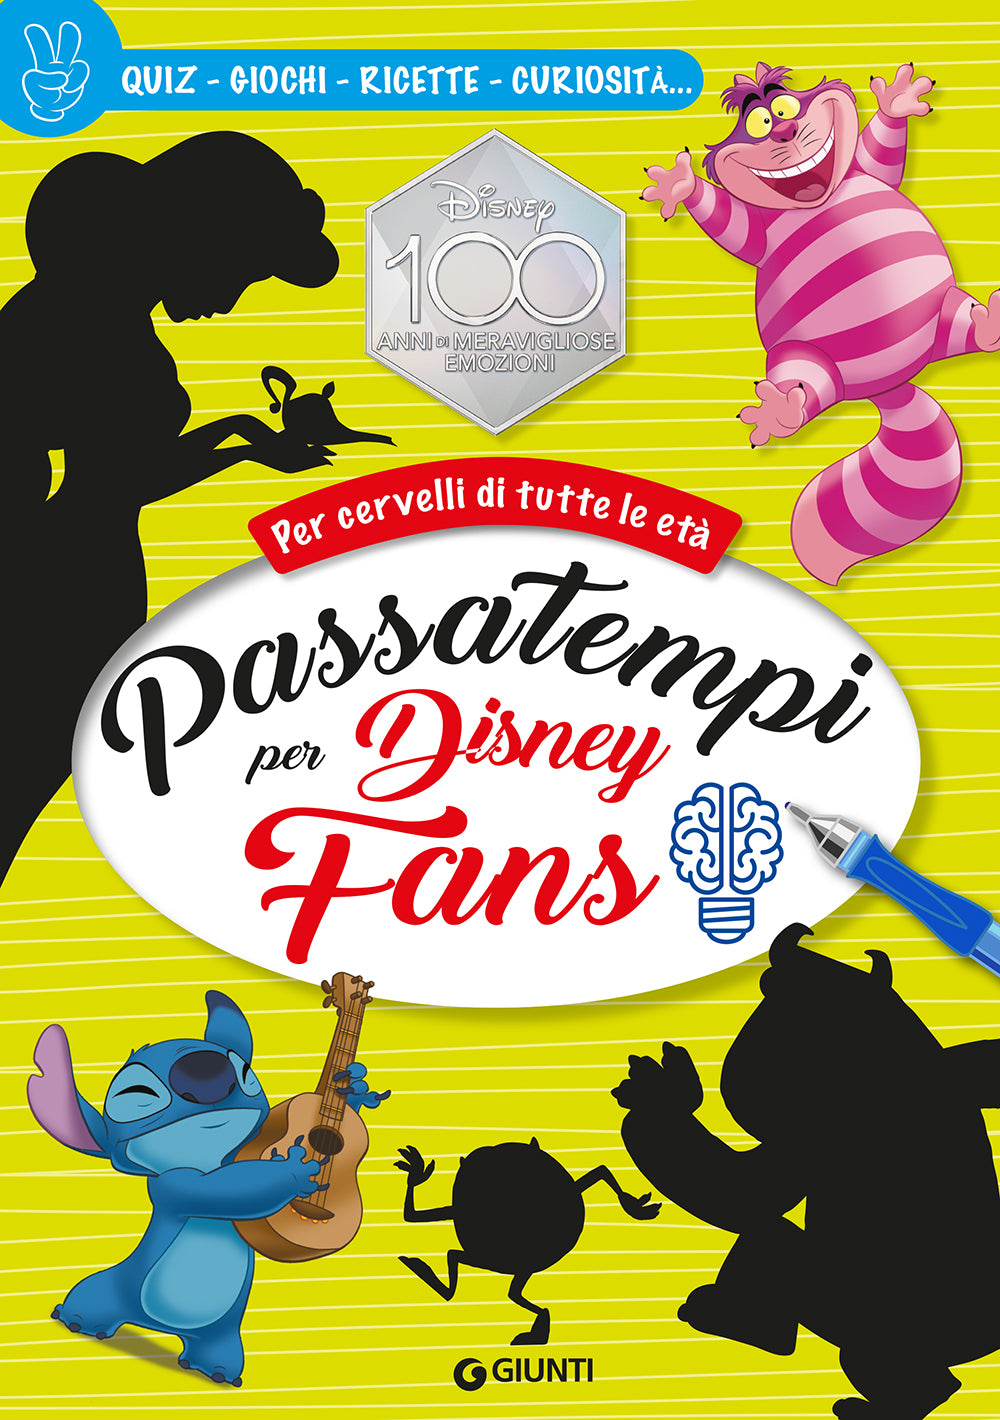 Passatempi per Disney Fans - Per cervelli di tutte le età::Quiz, giochi, ricette, curiosità